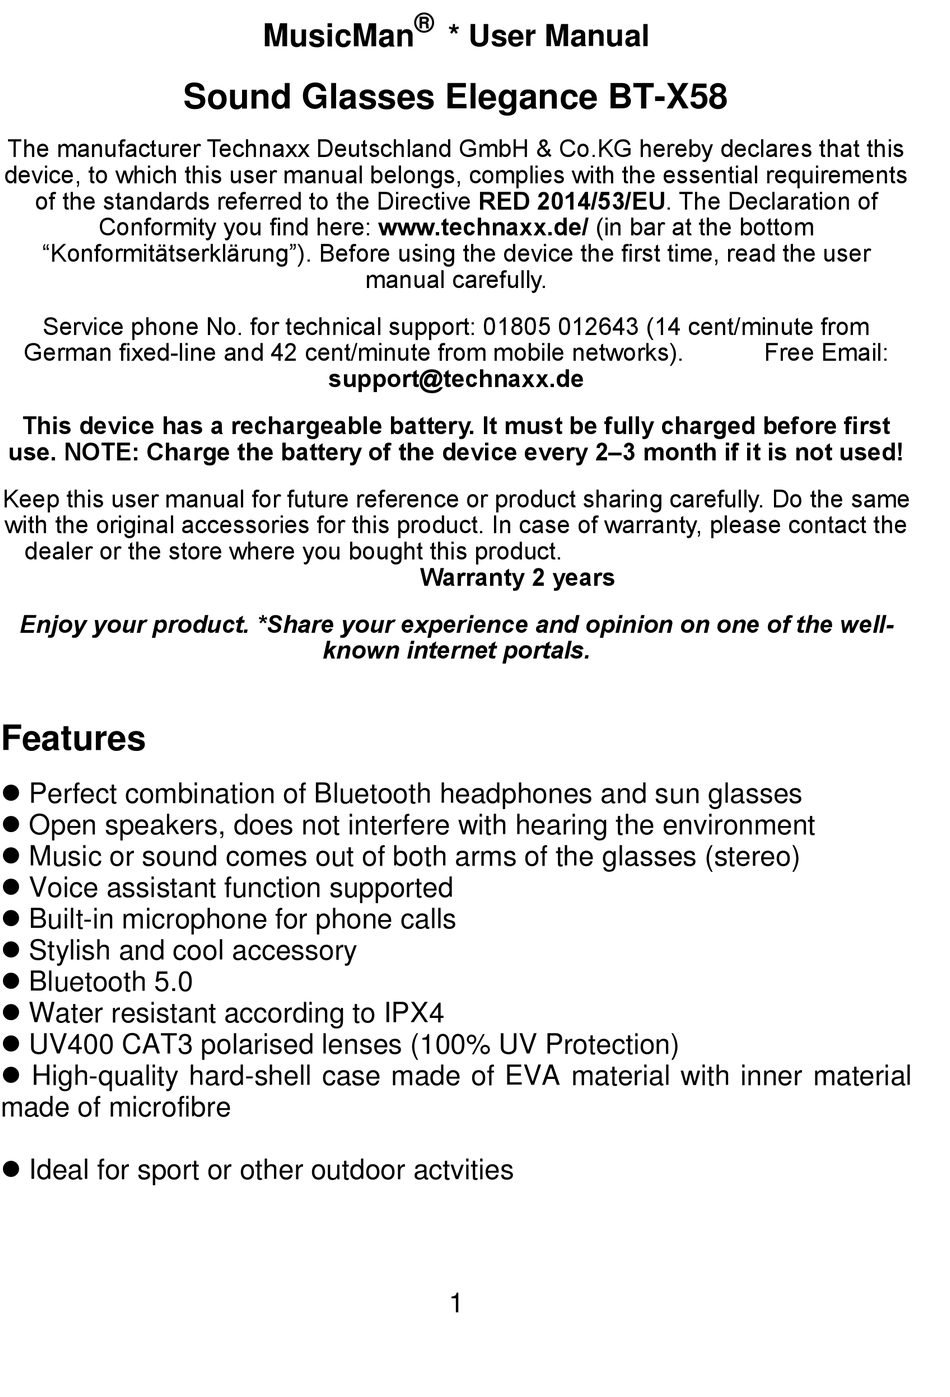 Pdf-Herunterladen ELEGANCE GLASSES | SOUND ManualsLib BT-X58 MUSICMAN BEDIENUNGSANLEITUNG